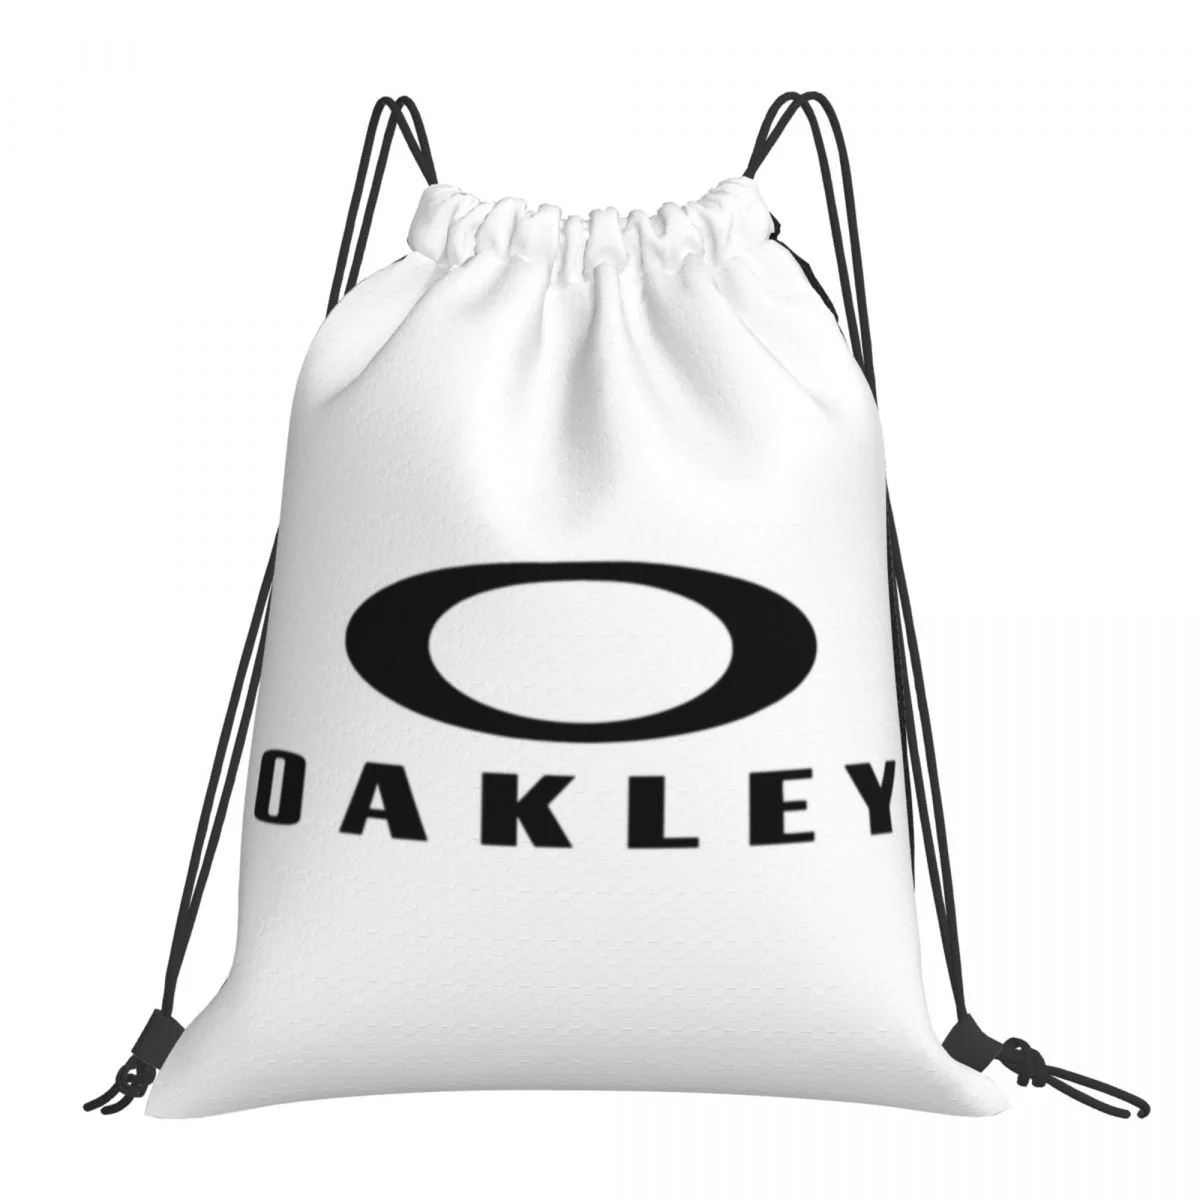 

Модные Портативные рюкзаки Oakley на шнурке, сумки с карманами для обуви, книжные сумки для мужчин, женщин и студентов